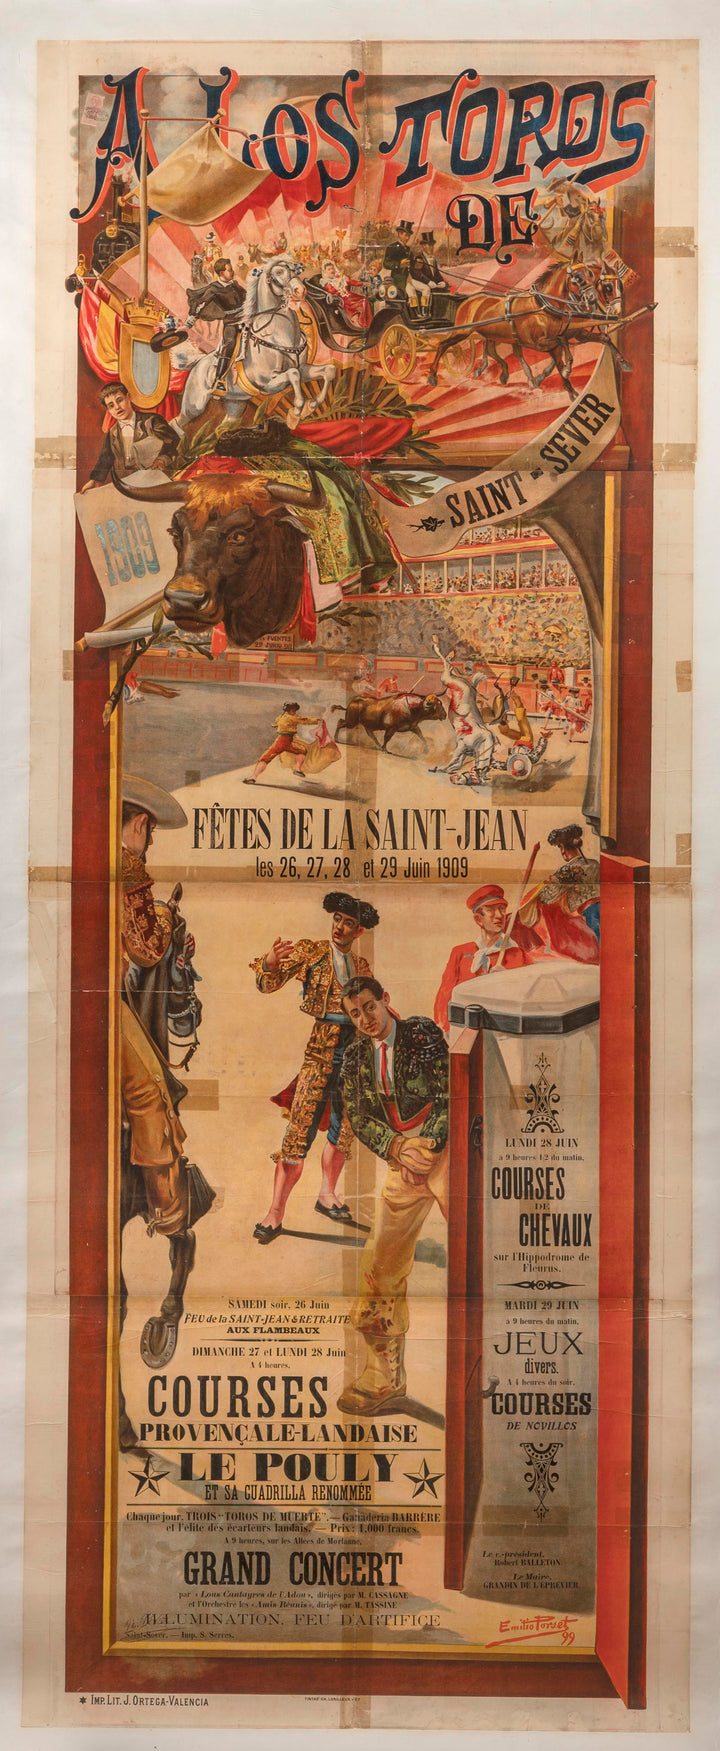 Affiche de corrida, Saint-sever 1909